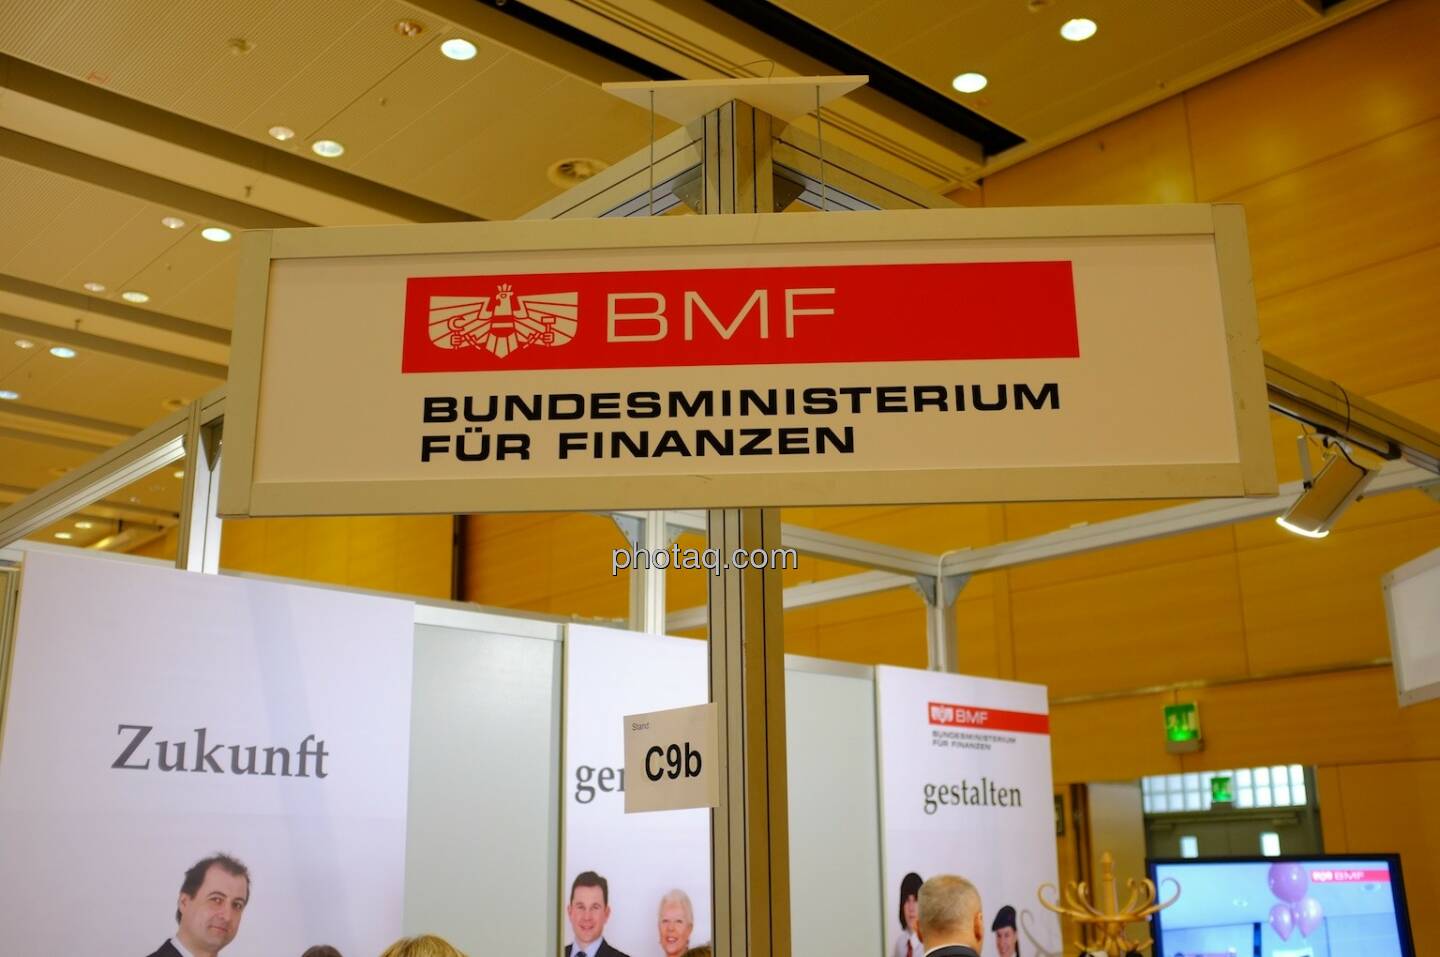 BMF, Bundesministerium für Finanzen